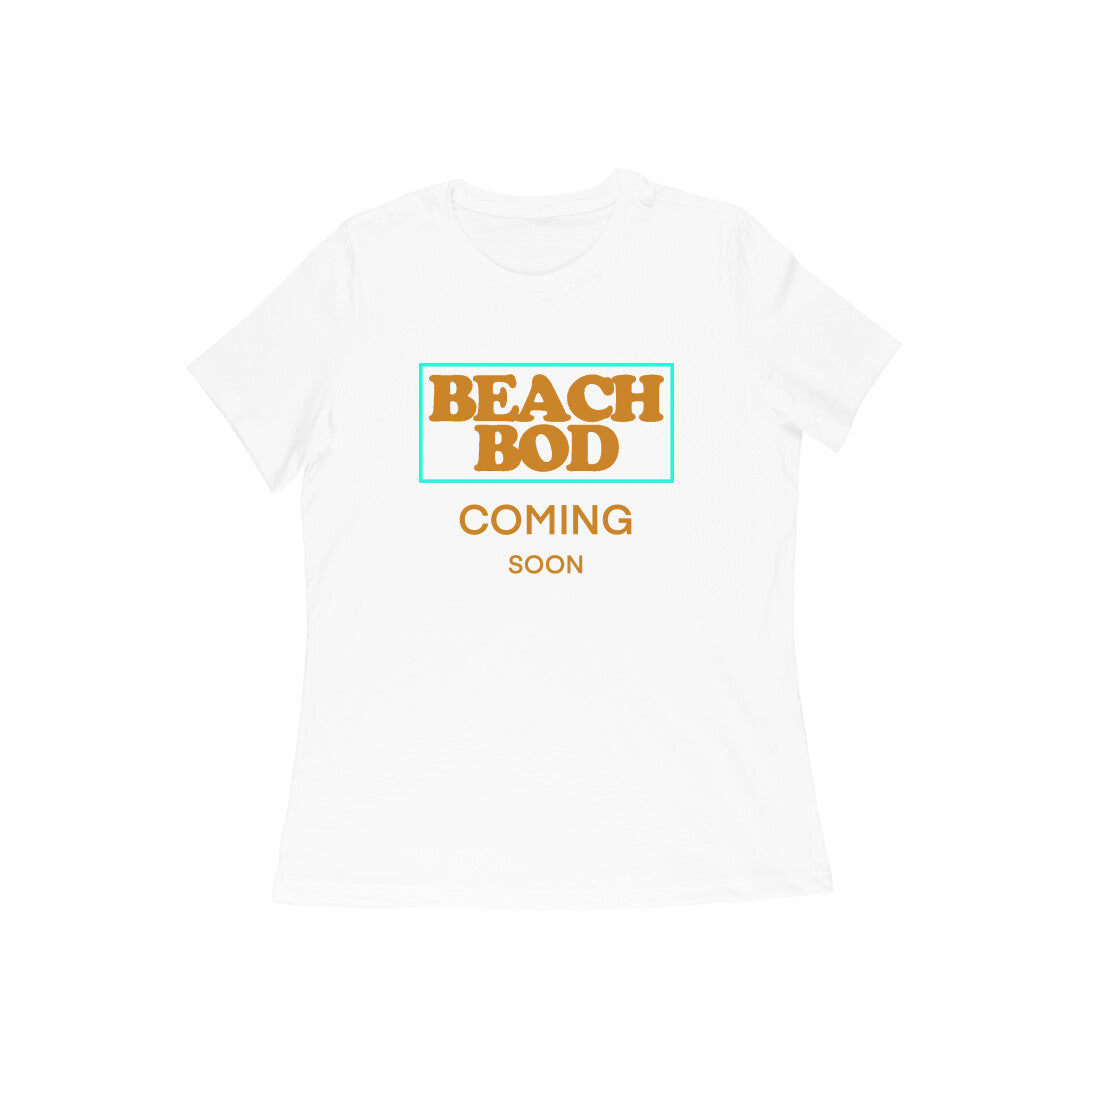 Beach Bod Workout T-shirt